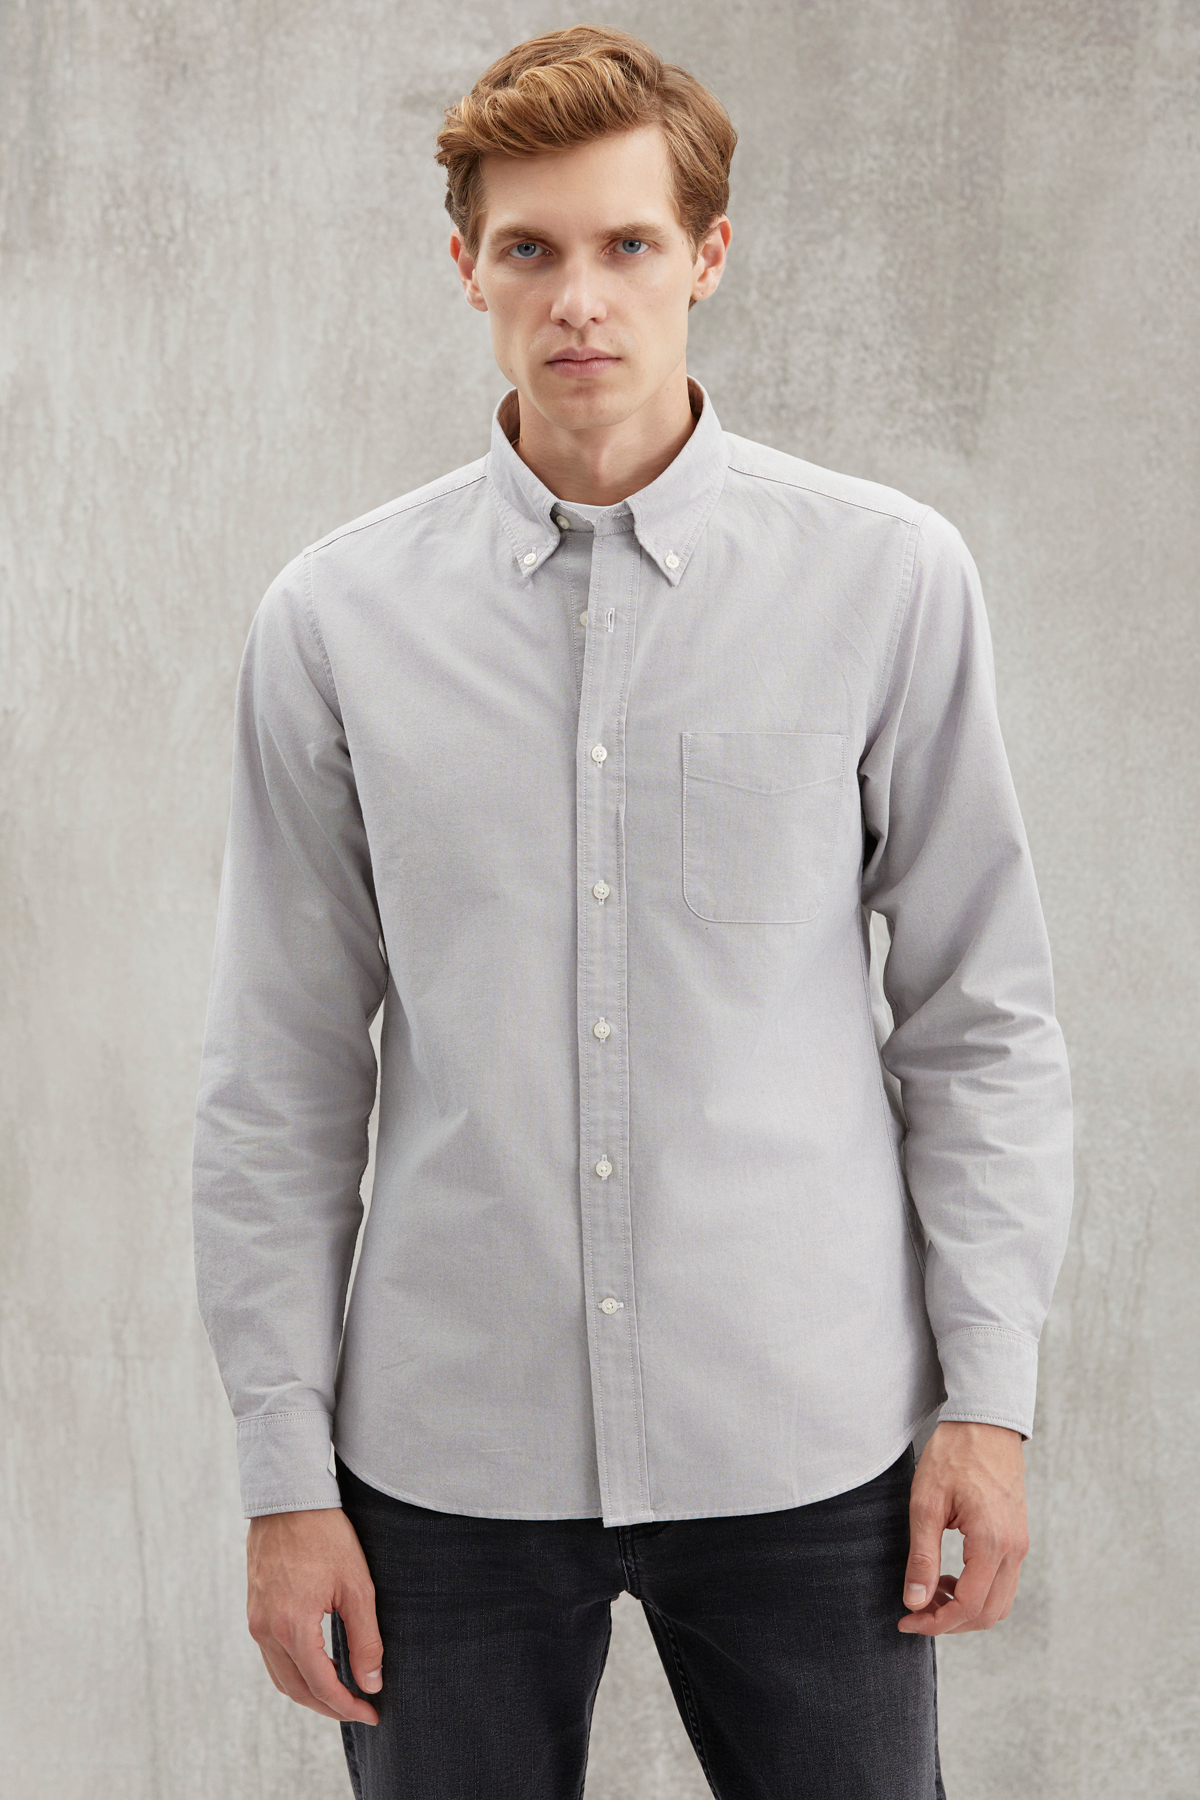 GRIMELANGE Cliff Men's 100% Cotton Pocketed Oxford Gray Shirt